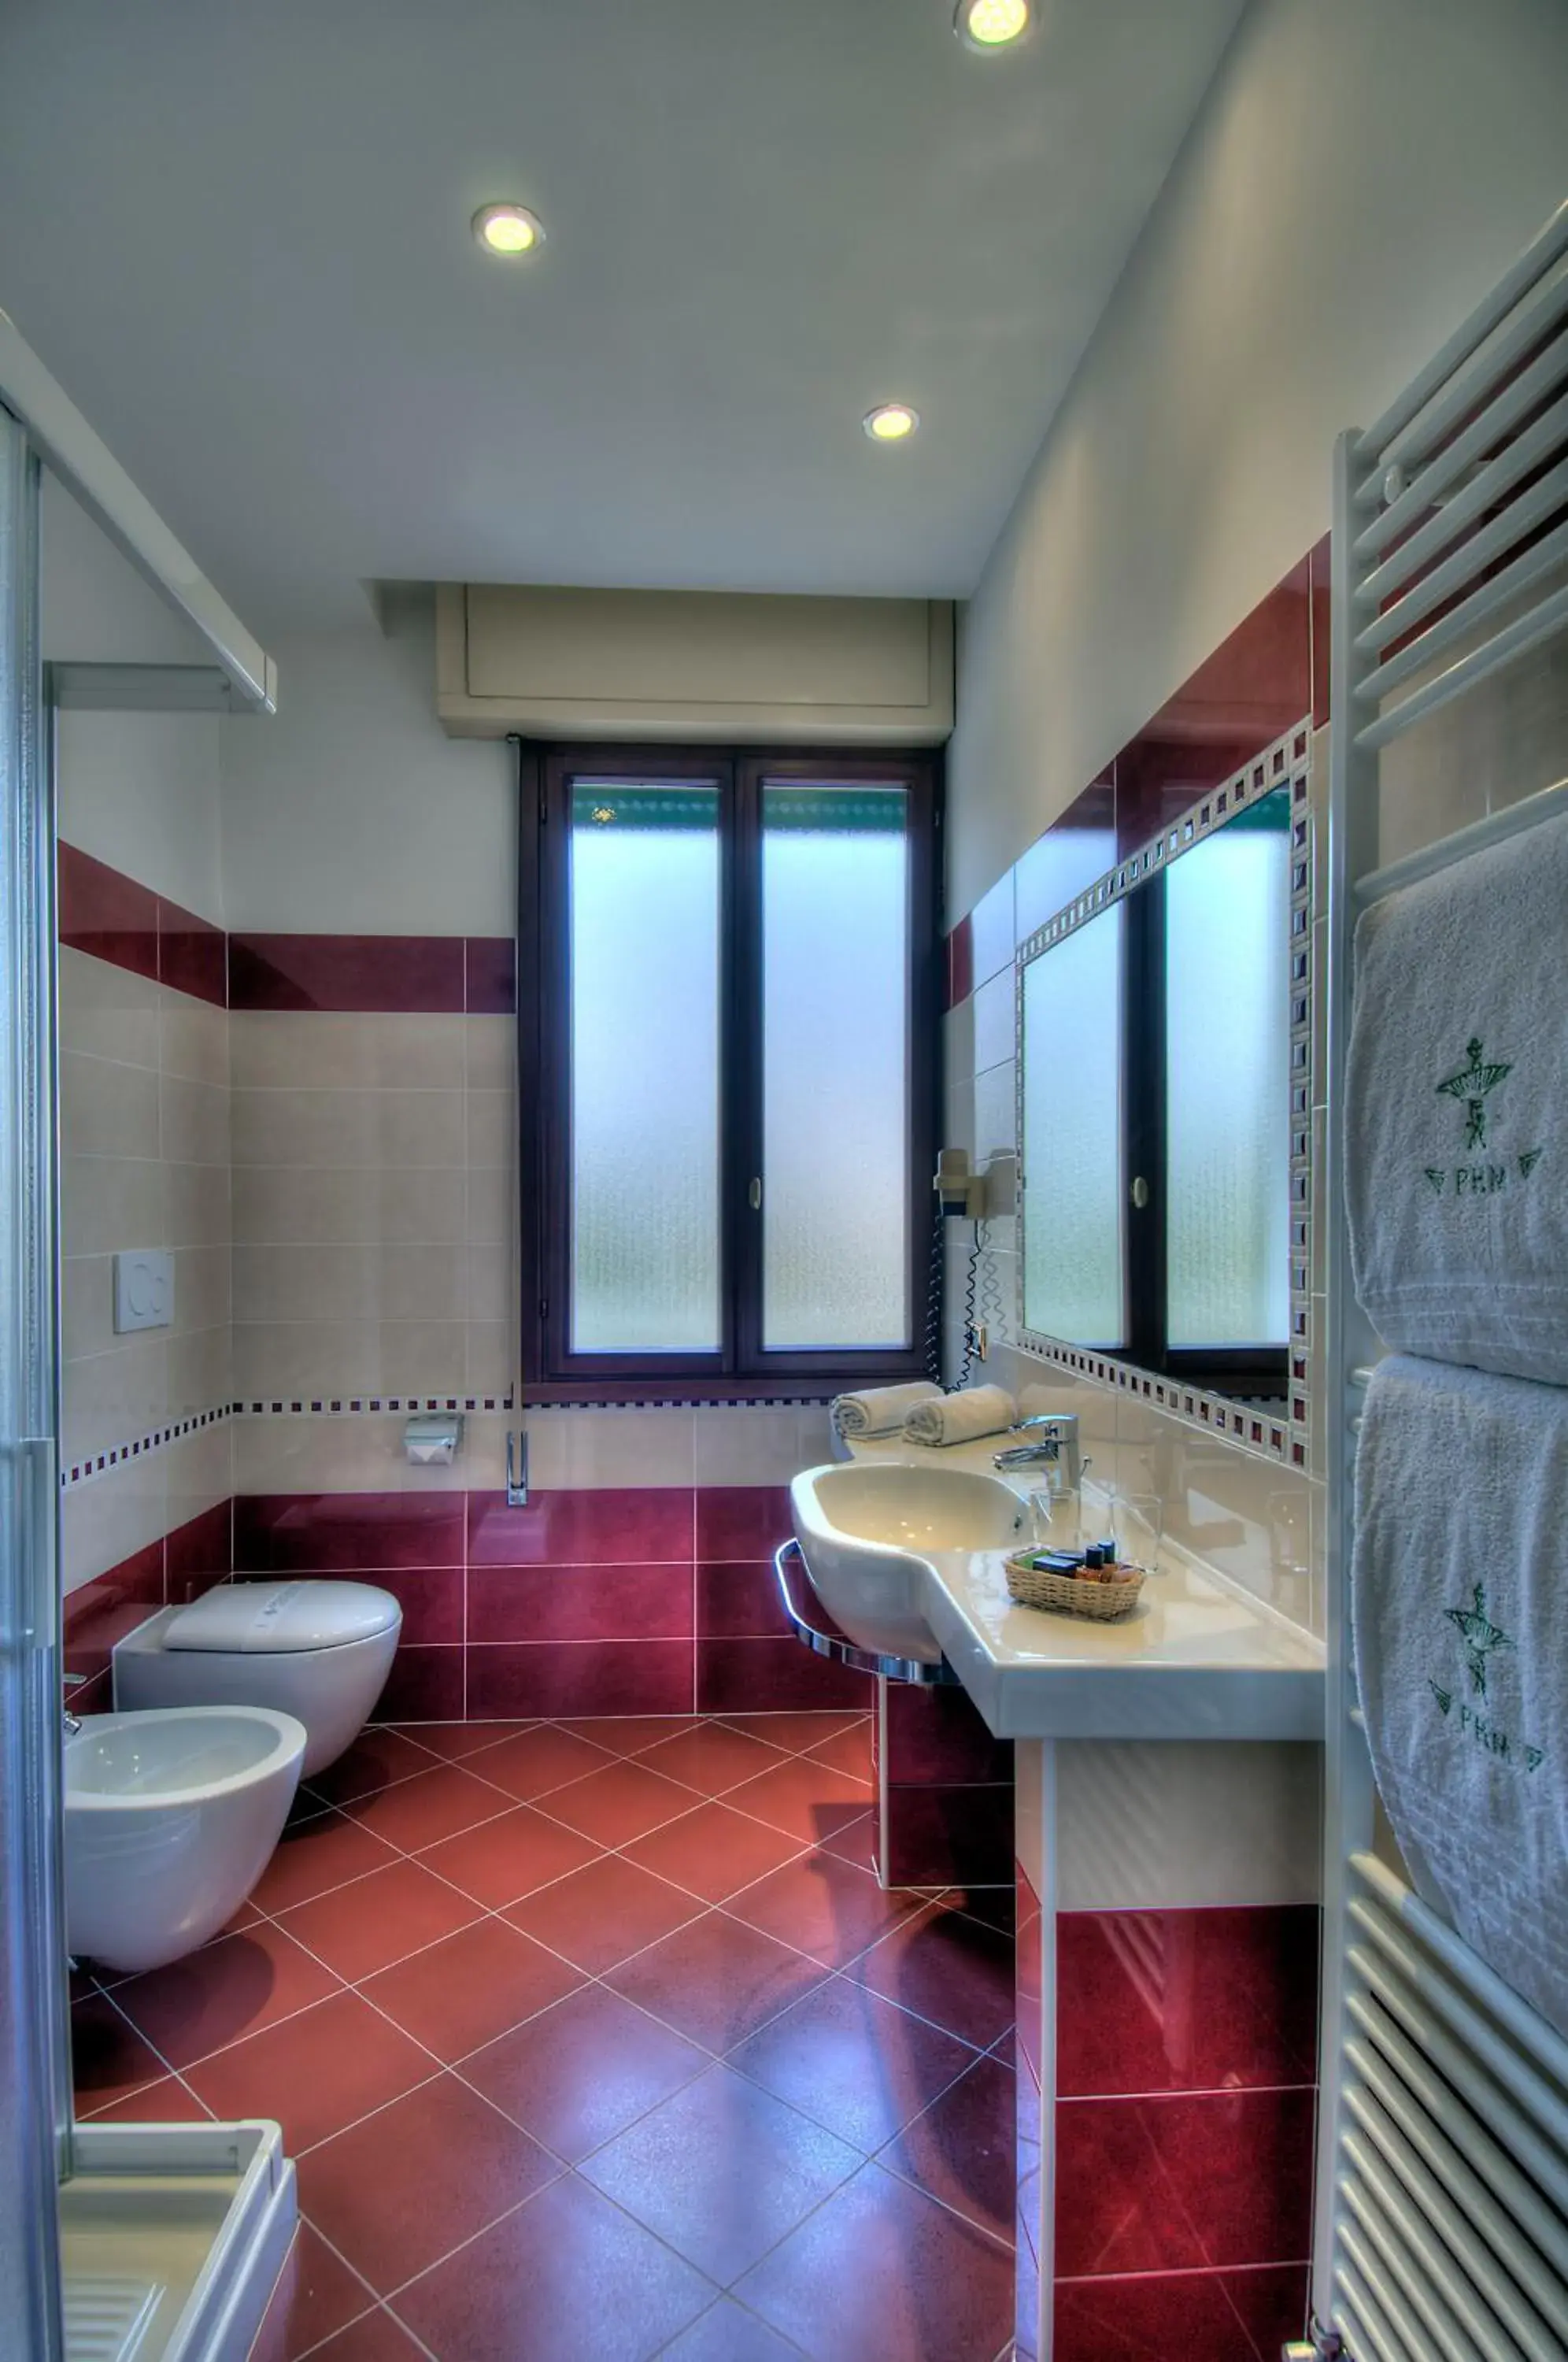 Bathroom in Palace Hotel Meggiorato